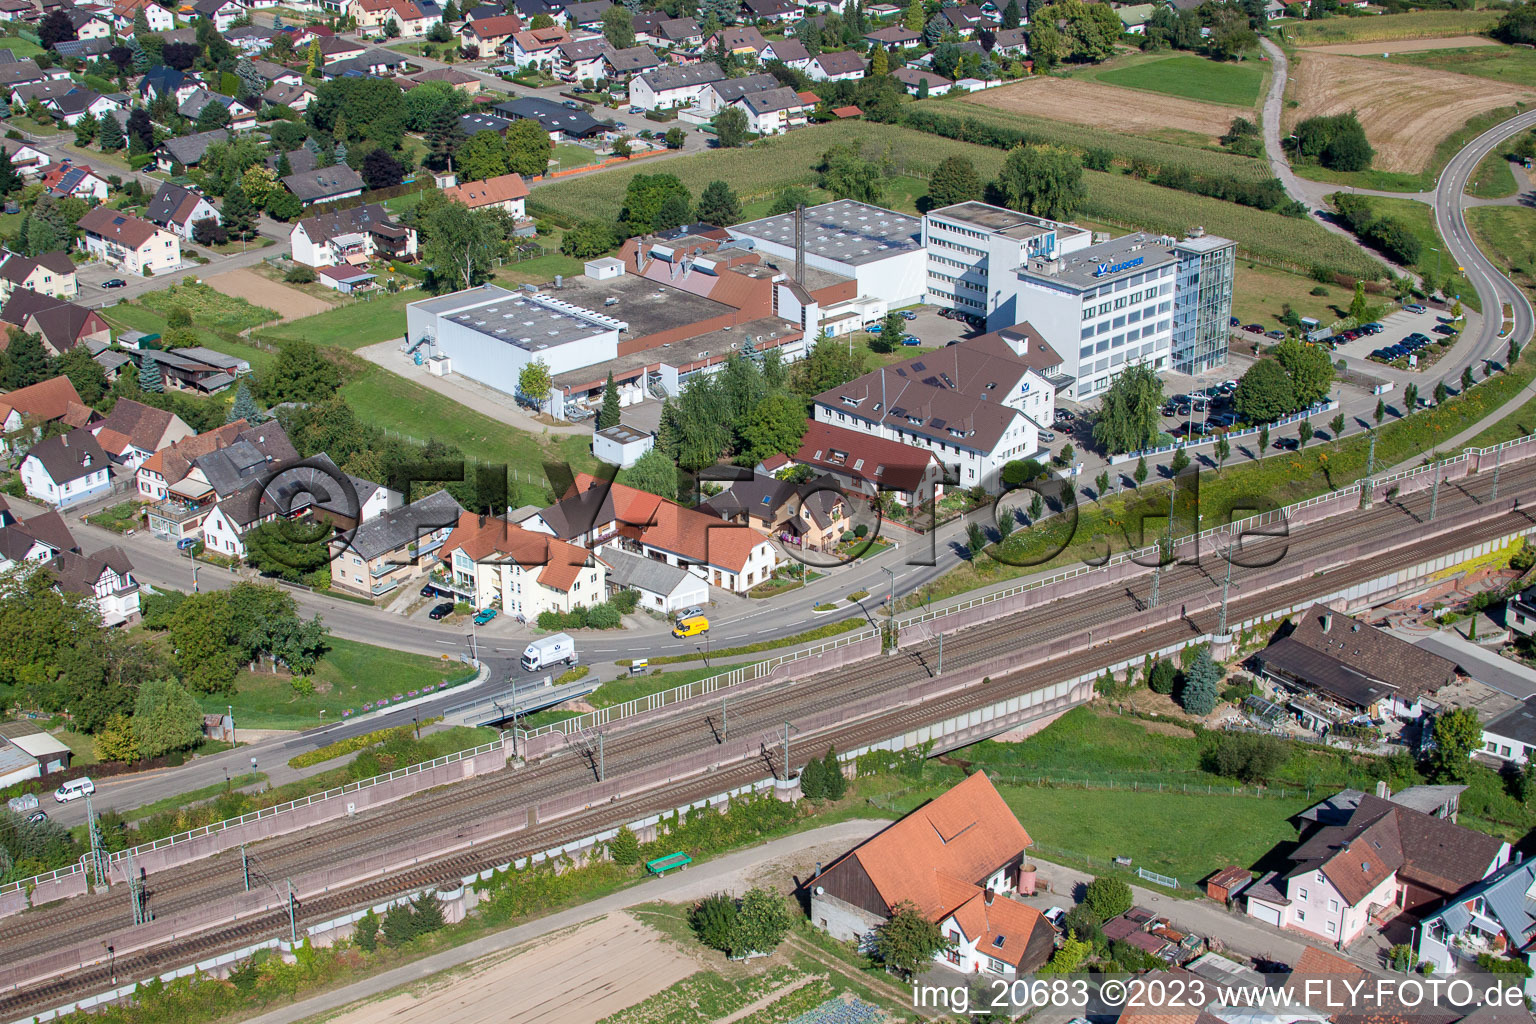 Klocke Pharma GmbH à le quartier Urloffen in Appenweier dans le département Bade-Wurtemberg, Allemagne hors des airs